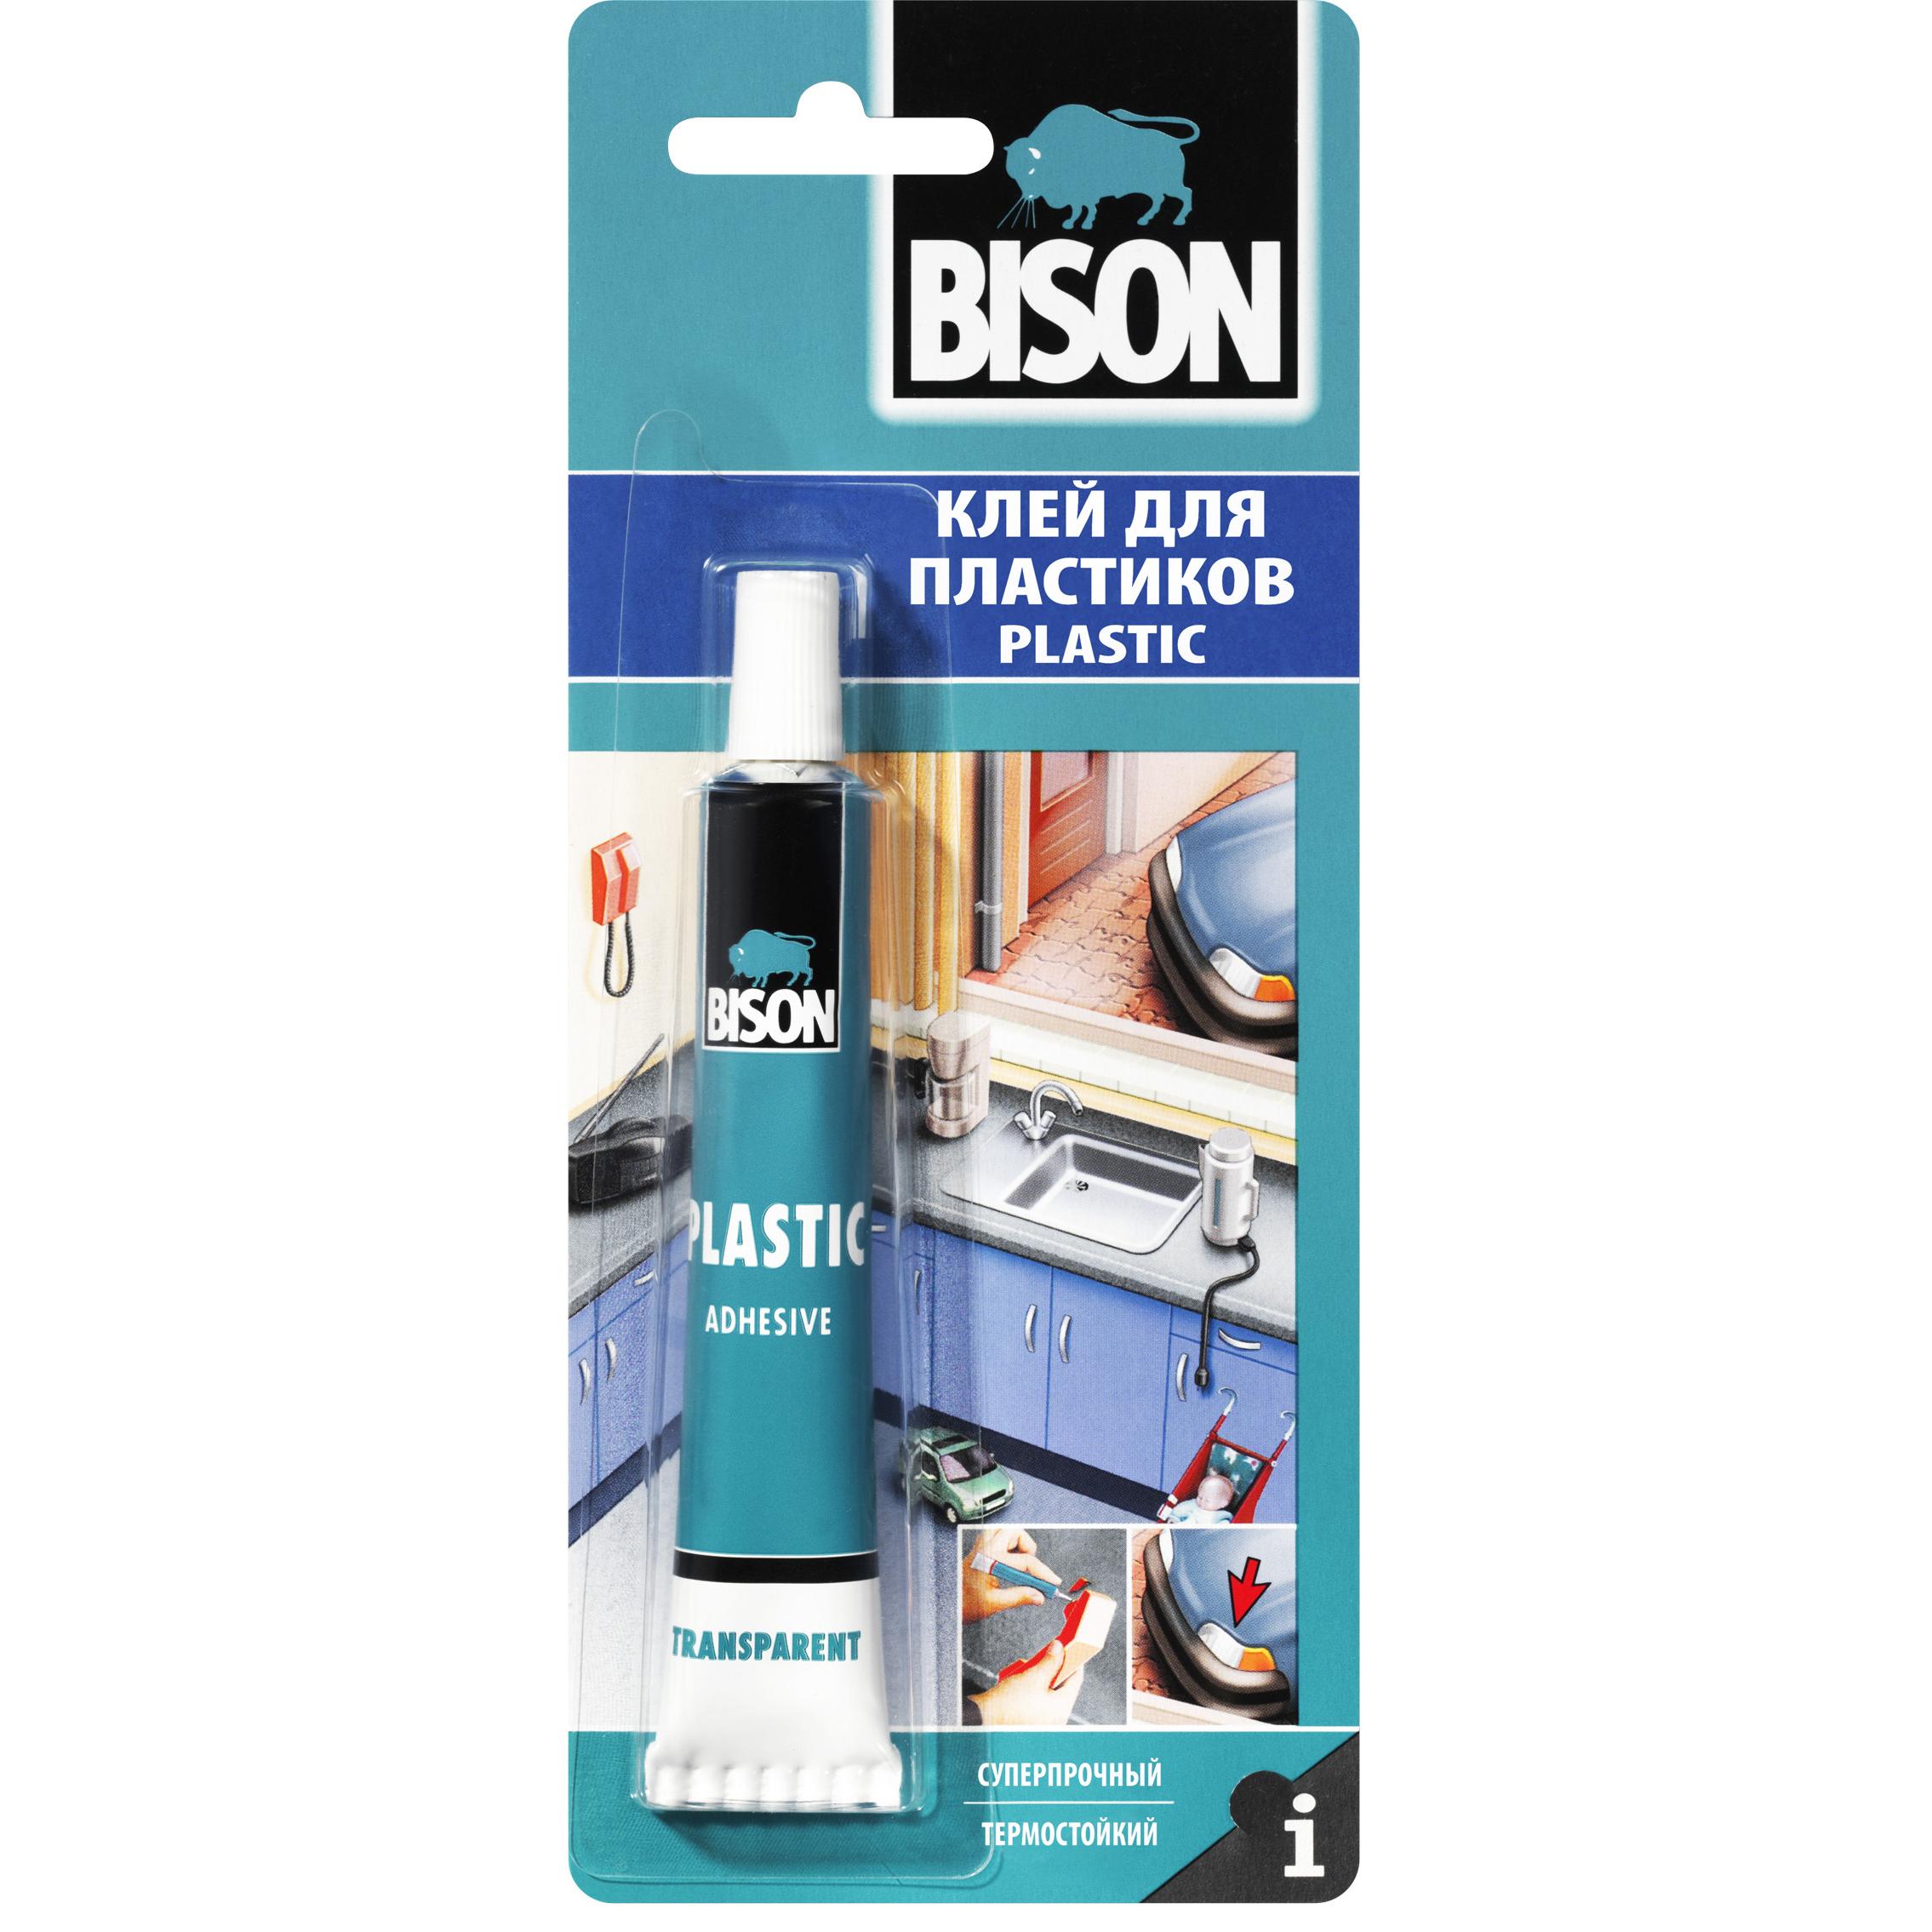 Клей для акриловой ванной. Клей Бизон Plastic Adhesive. Клей Bison Max Repair, 8гр. Bison клей для пластика. Клей температуростойкий для пластика.